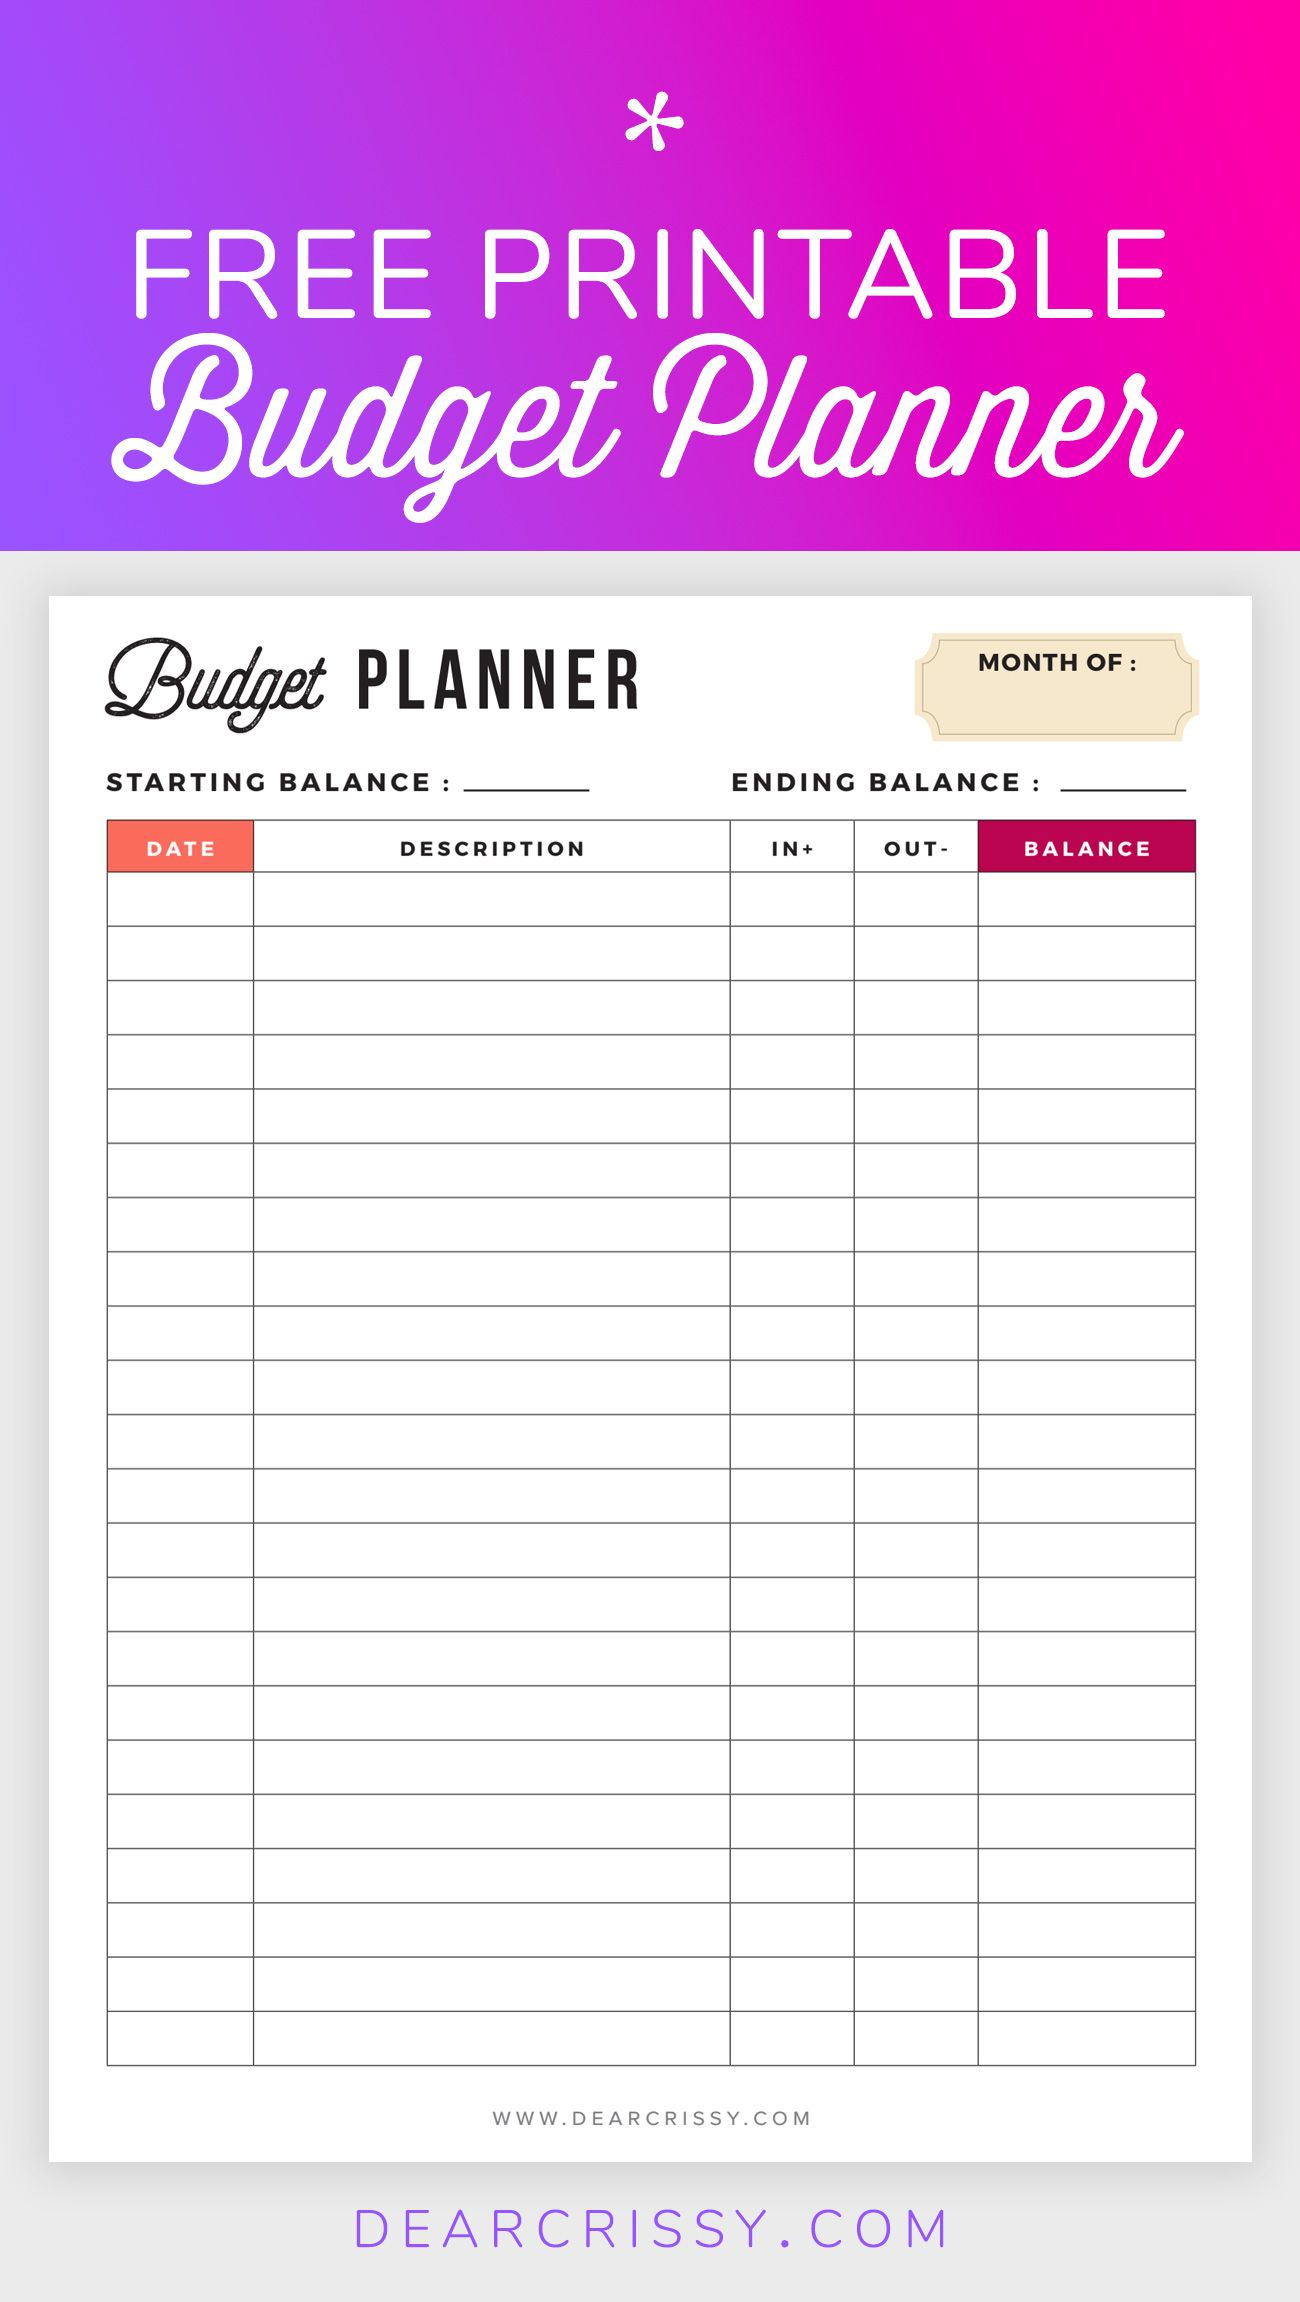 Free Budget Planner Printable - Printable Finance Planner | Office - Free Printable Budget Planner